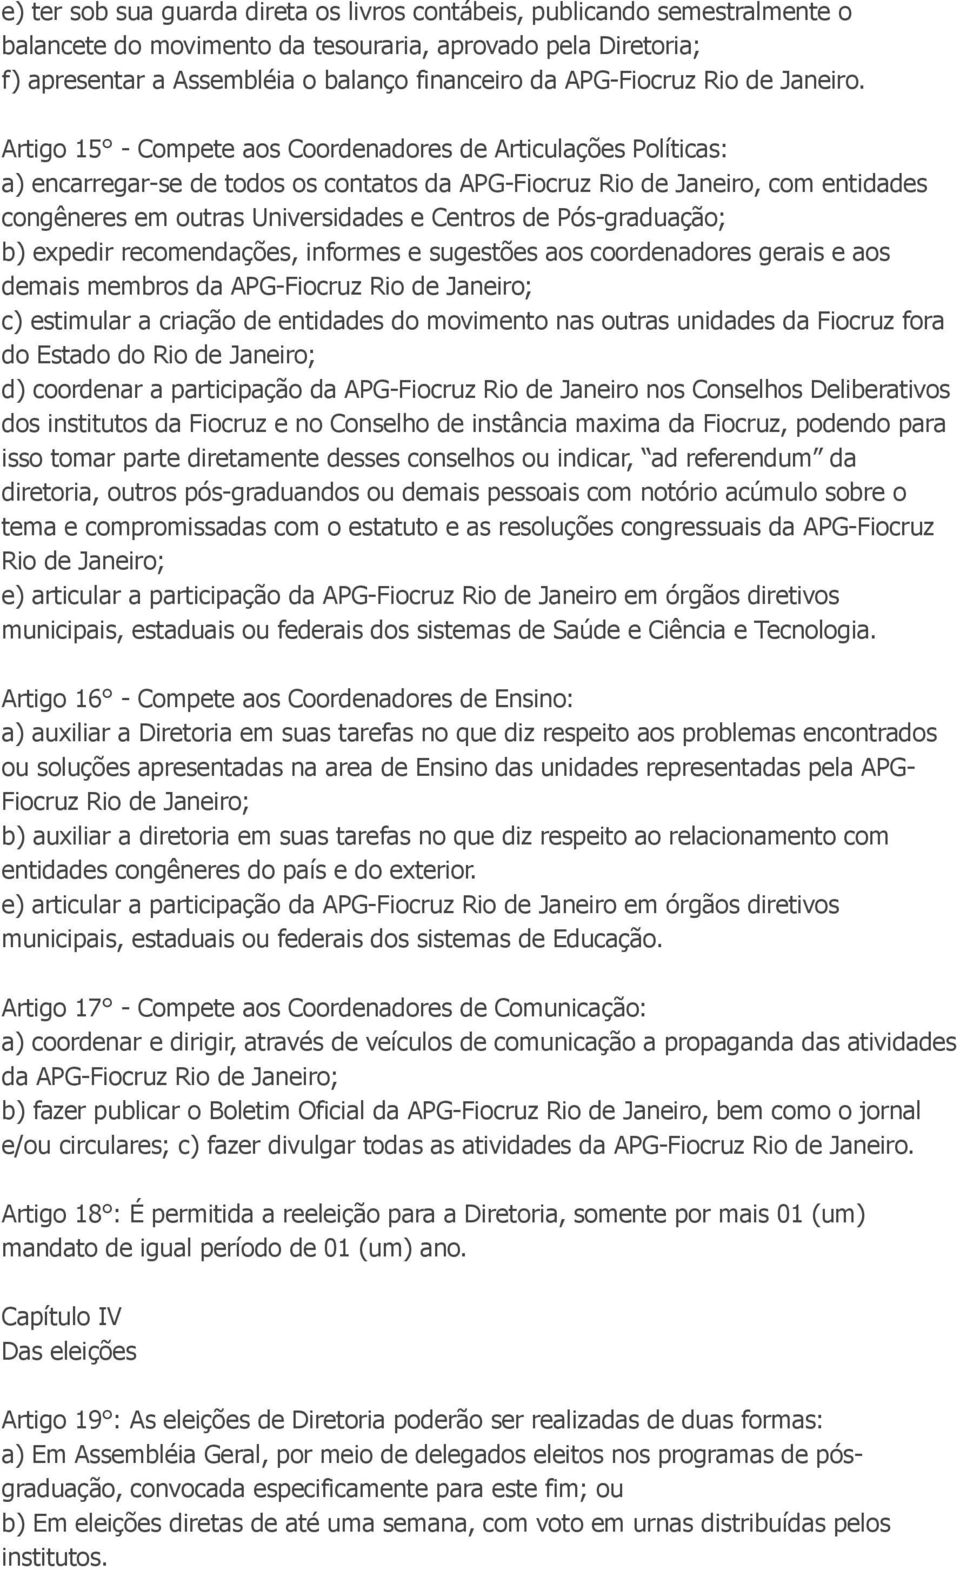 Artigo 15 - Compete aos Coordenadores de Articulações Políticas: a) encarregar-se de todos os contatos da APG-Fiocruz Rio de Janeiro, com entidades congêneres em outras Universidades e Centros de